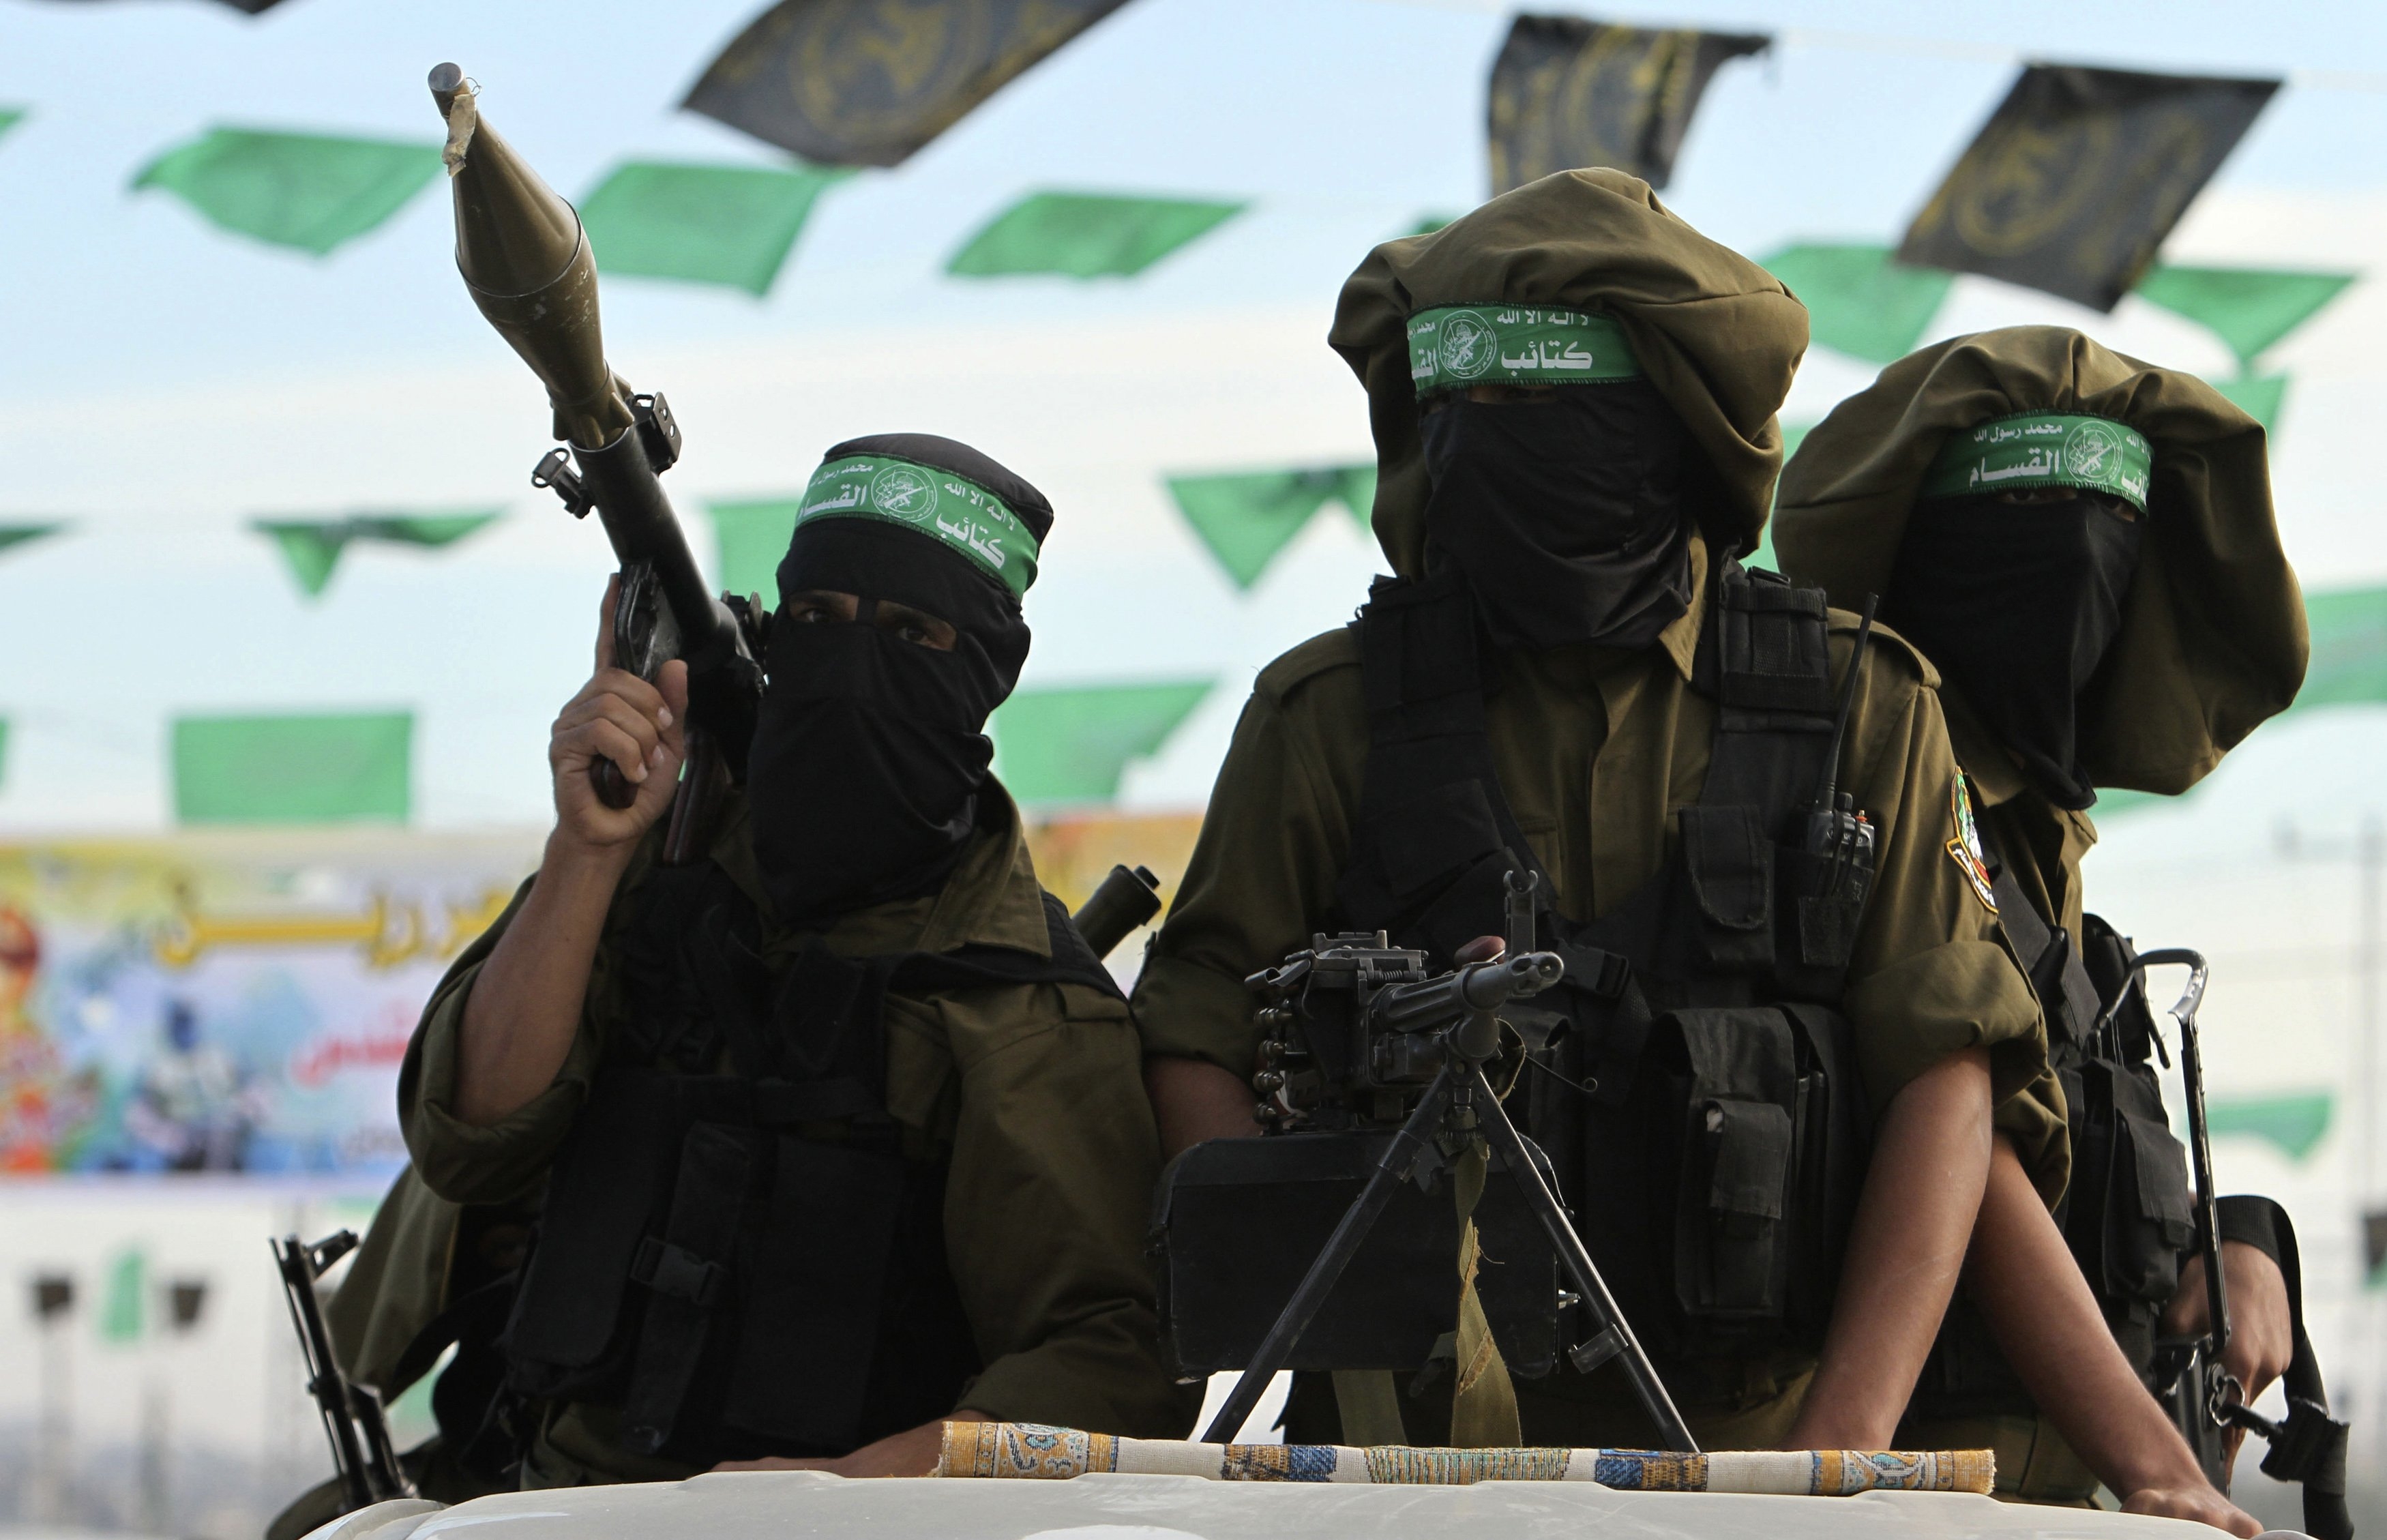 gruparea Hamas pierde teritoriul în fața Israelienilor